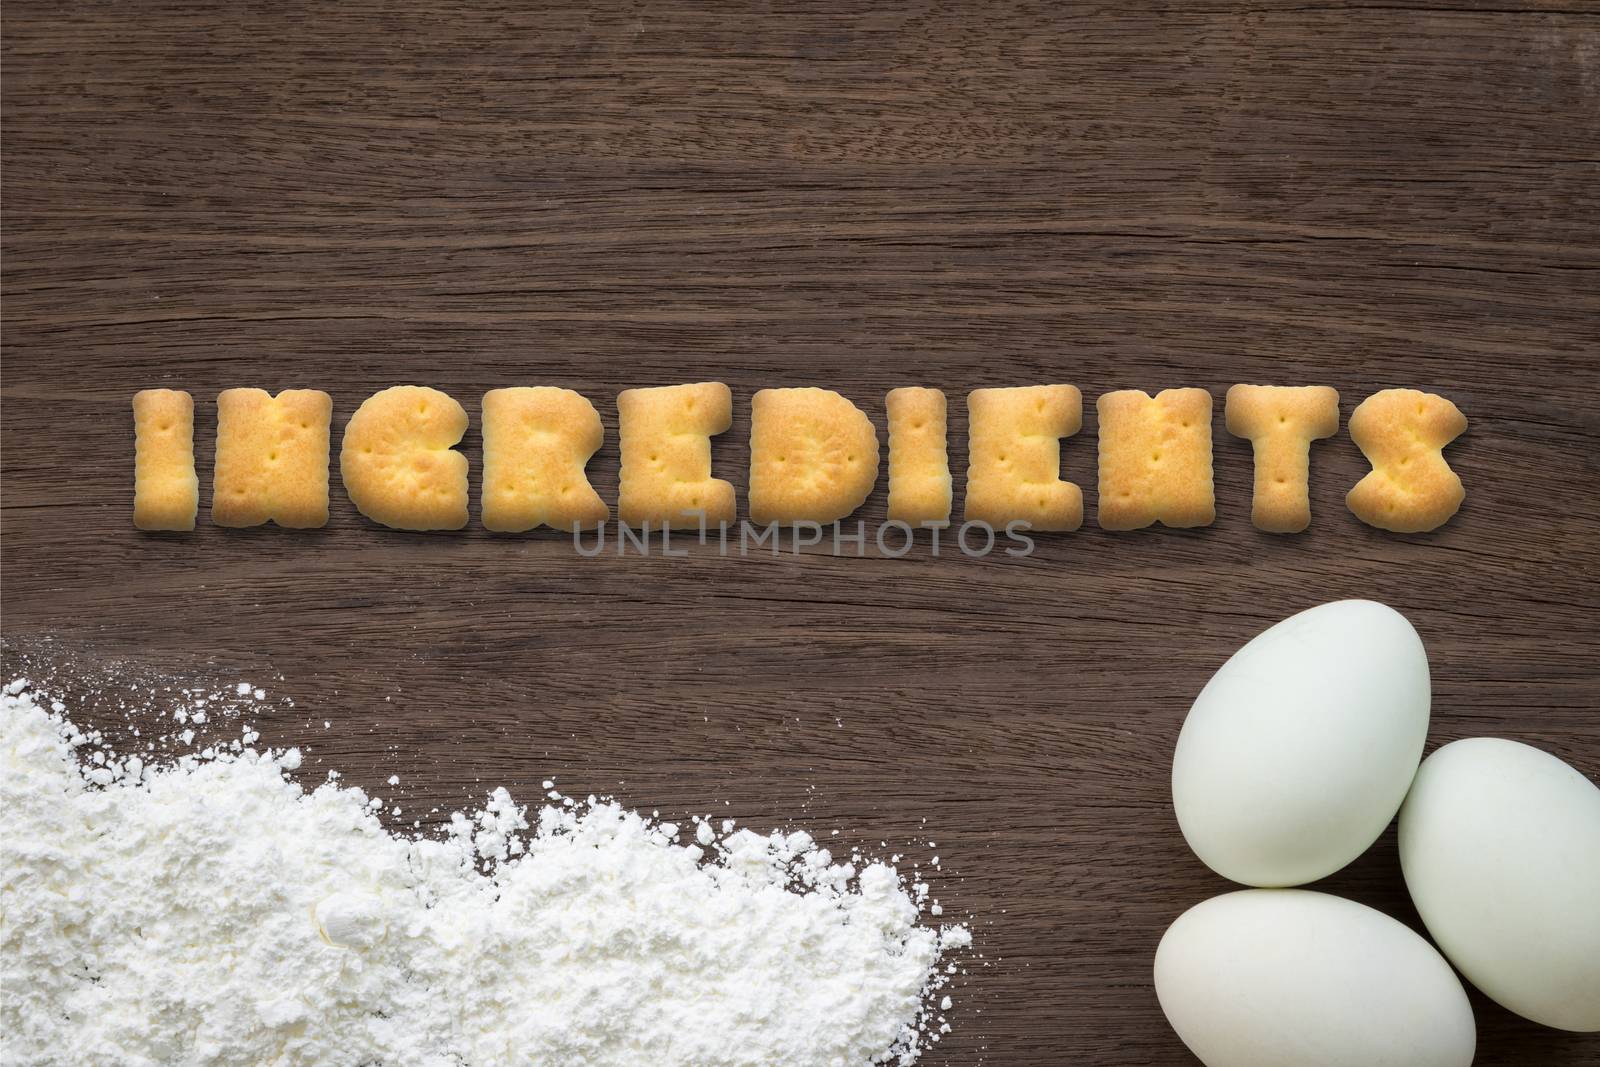 Alphabet cookies word INGREDIENTS on cooking table background by vinnstock